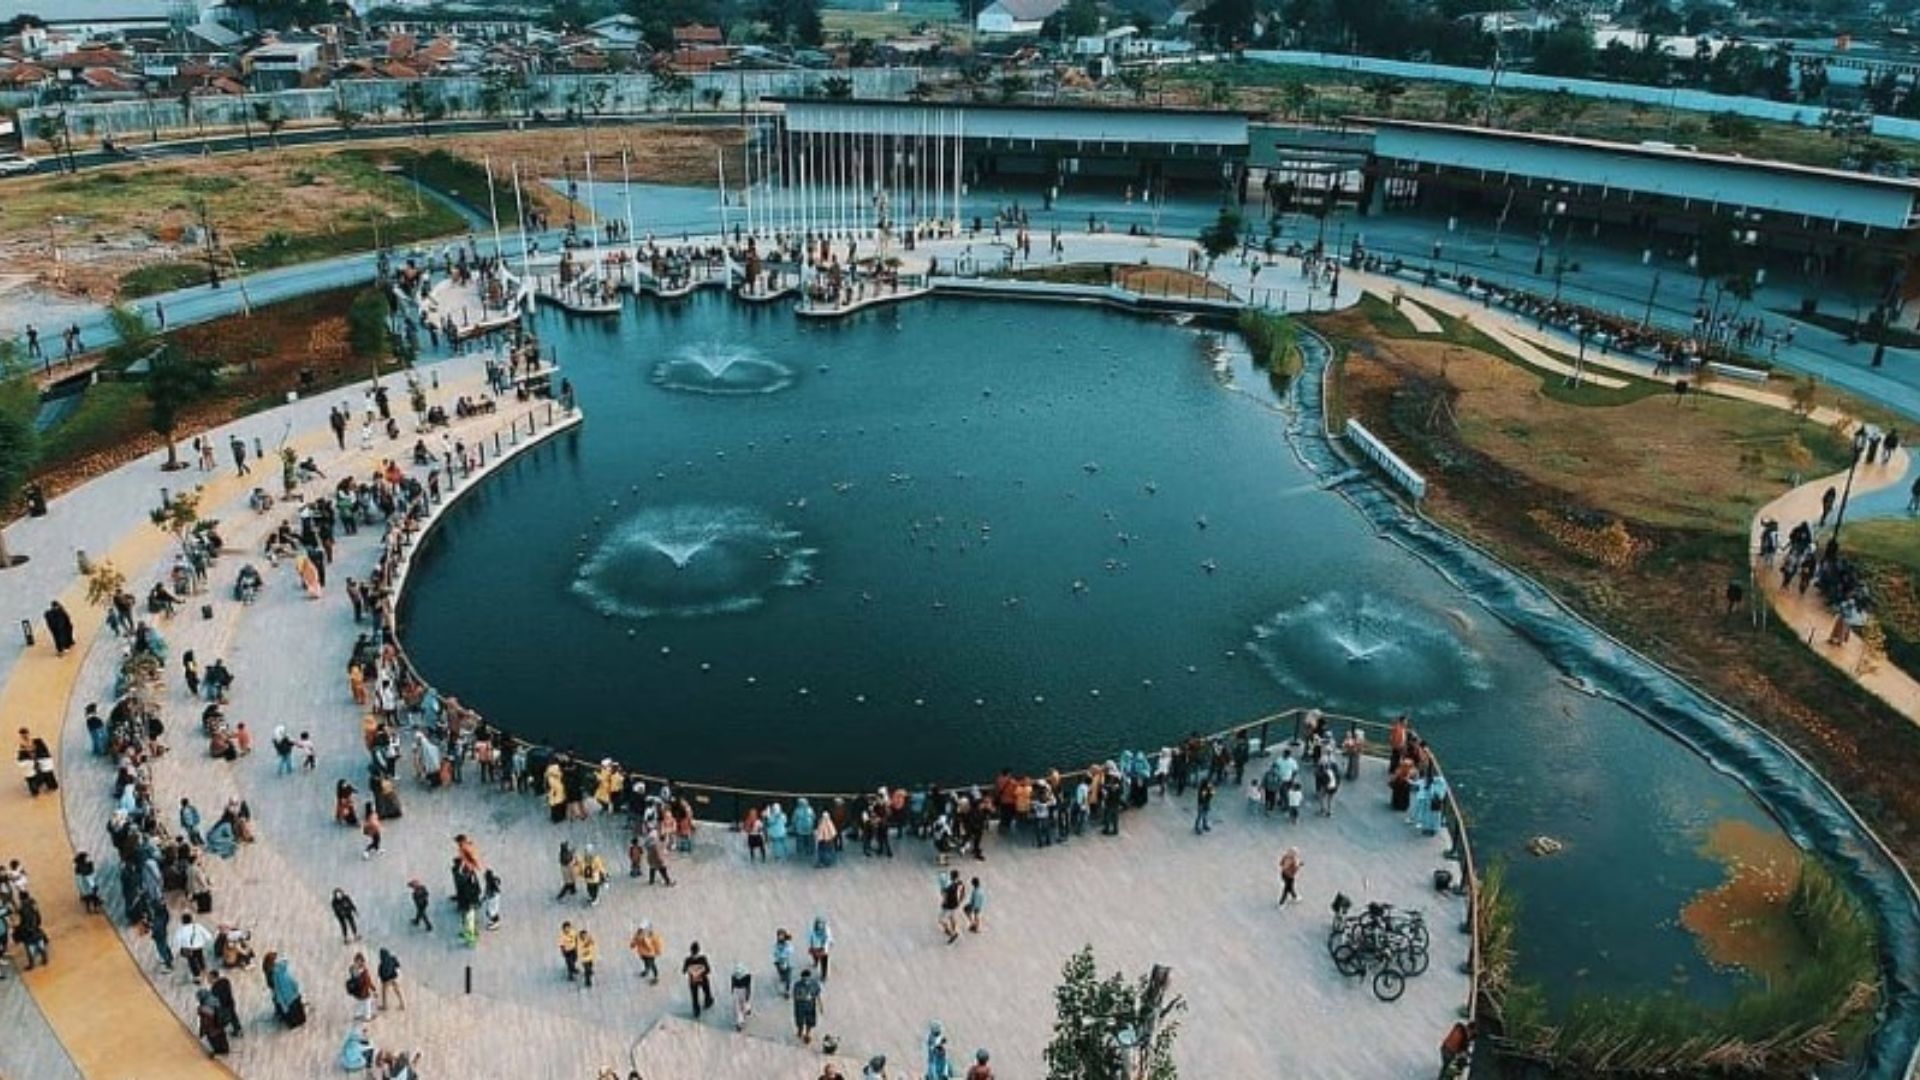 Atraksi air di Kiara Artha Park. / instagram/ @letsgobandung